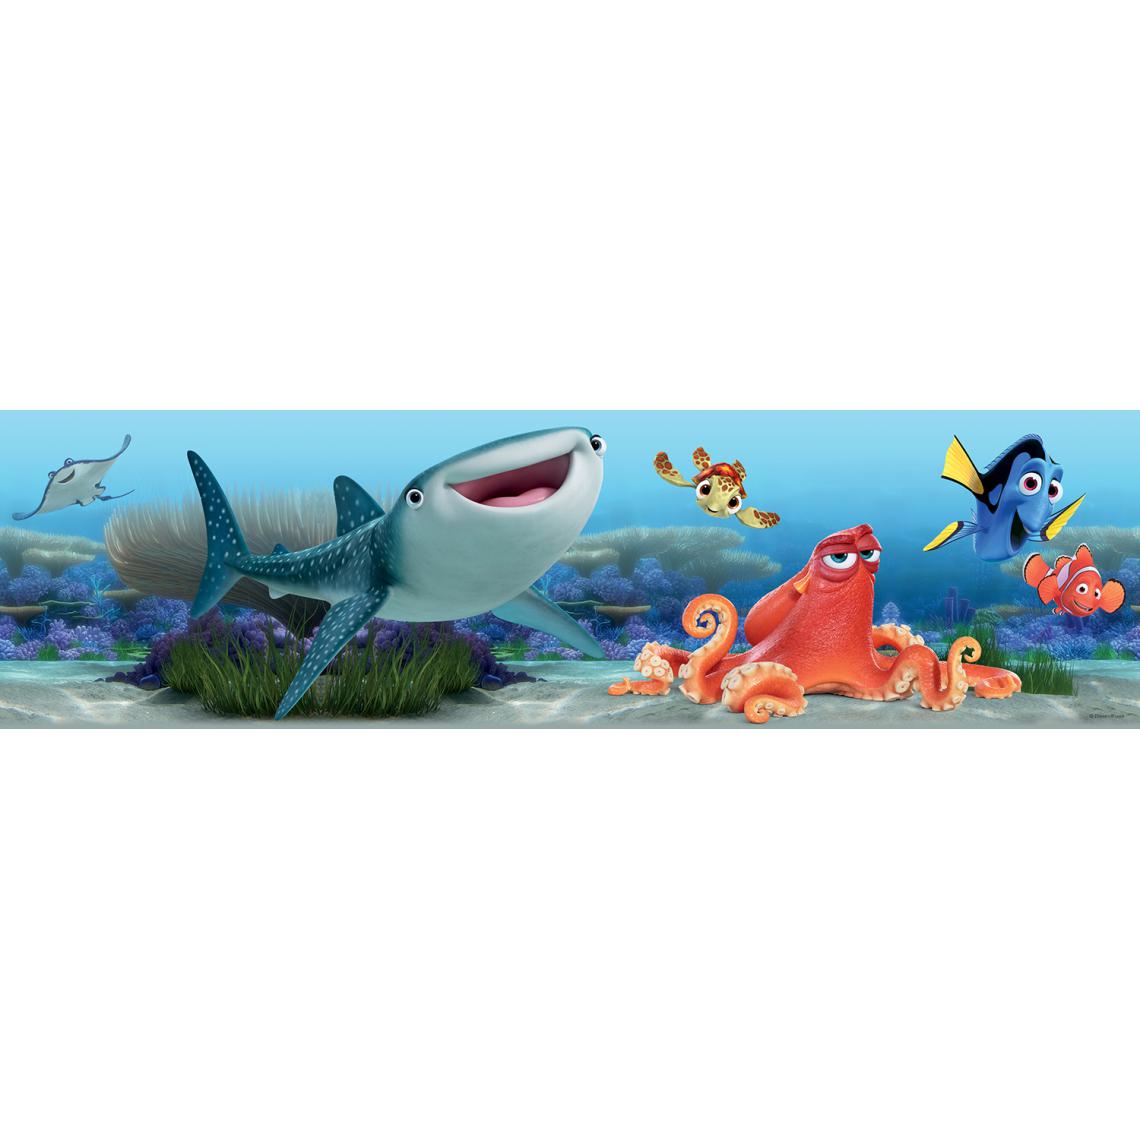 Ag Art - Frise Le Monde de Nemo Disney - Frise murale